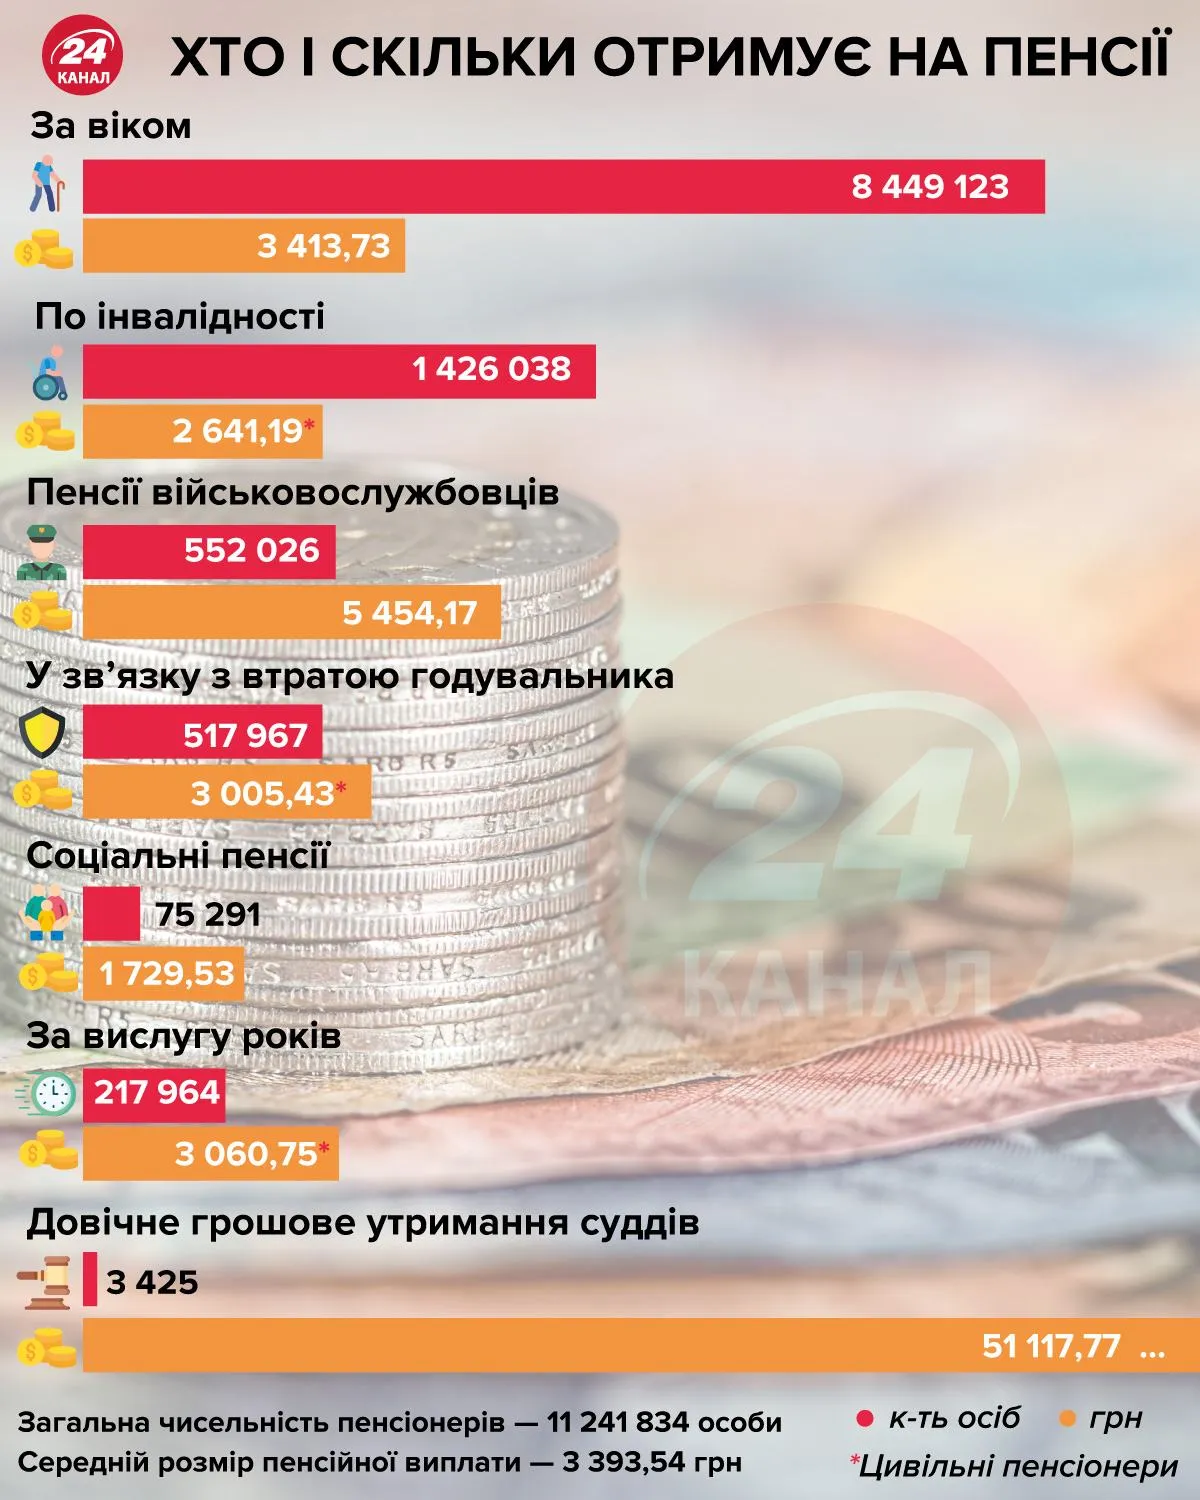 пенсії в Україні, хто скільки отримує